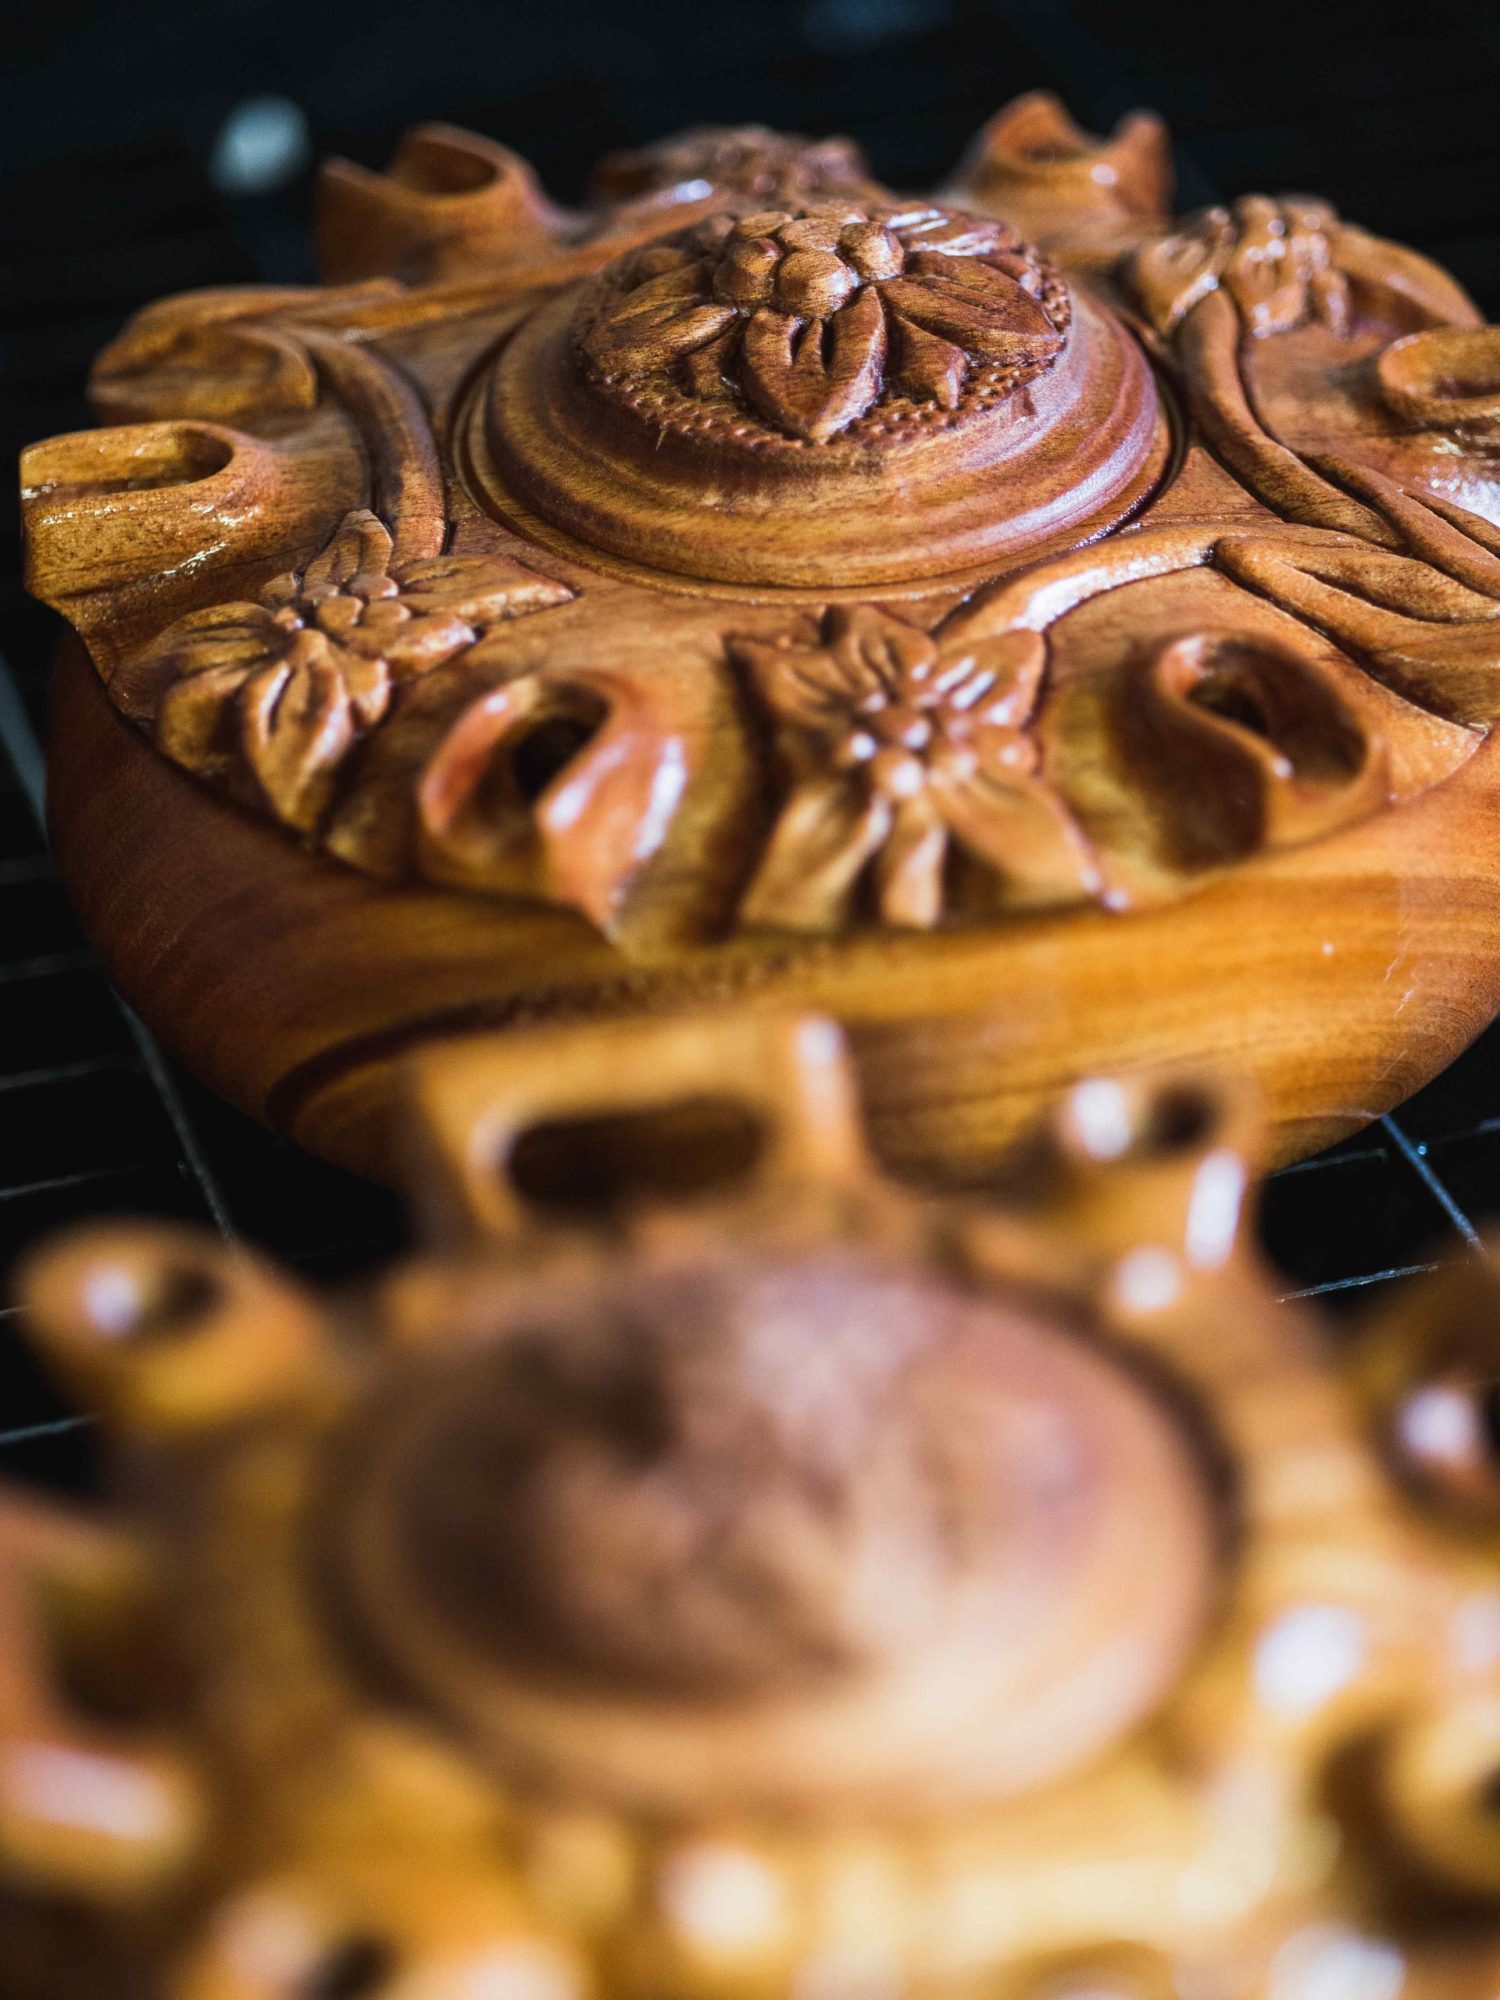 La Coppa dell'Amicizia in legno, tornita e decorata, un simbolo dell'artigianato in Valle d'Aosta